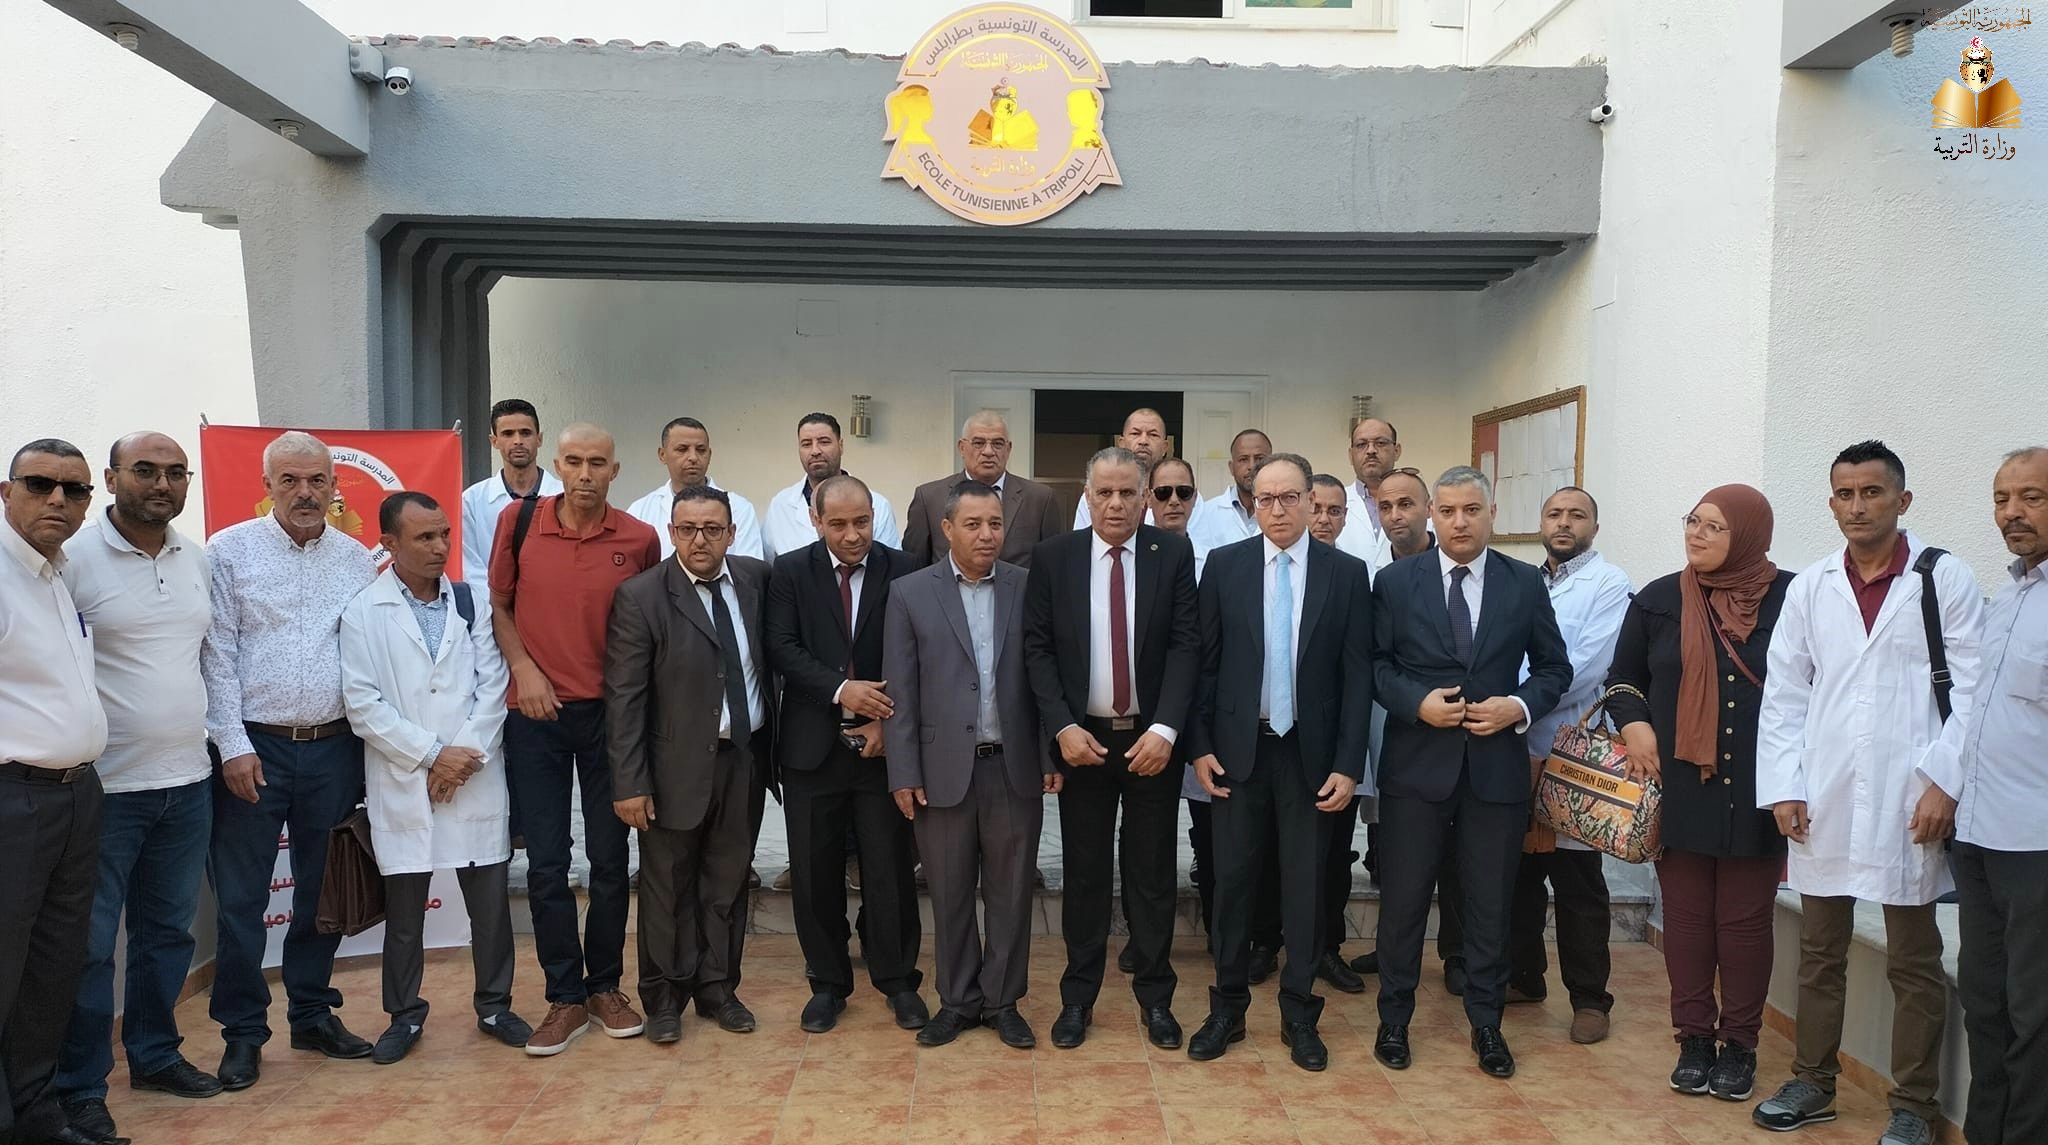 Tunisie-Libye: Inauguration officielle de l’école Tunisienne à Tripoli (Photos)